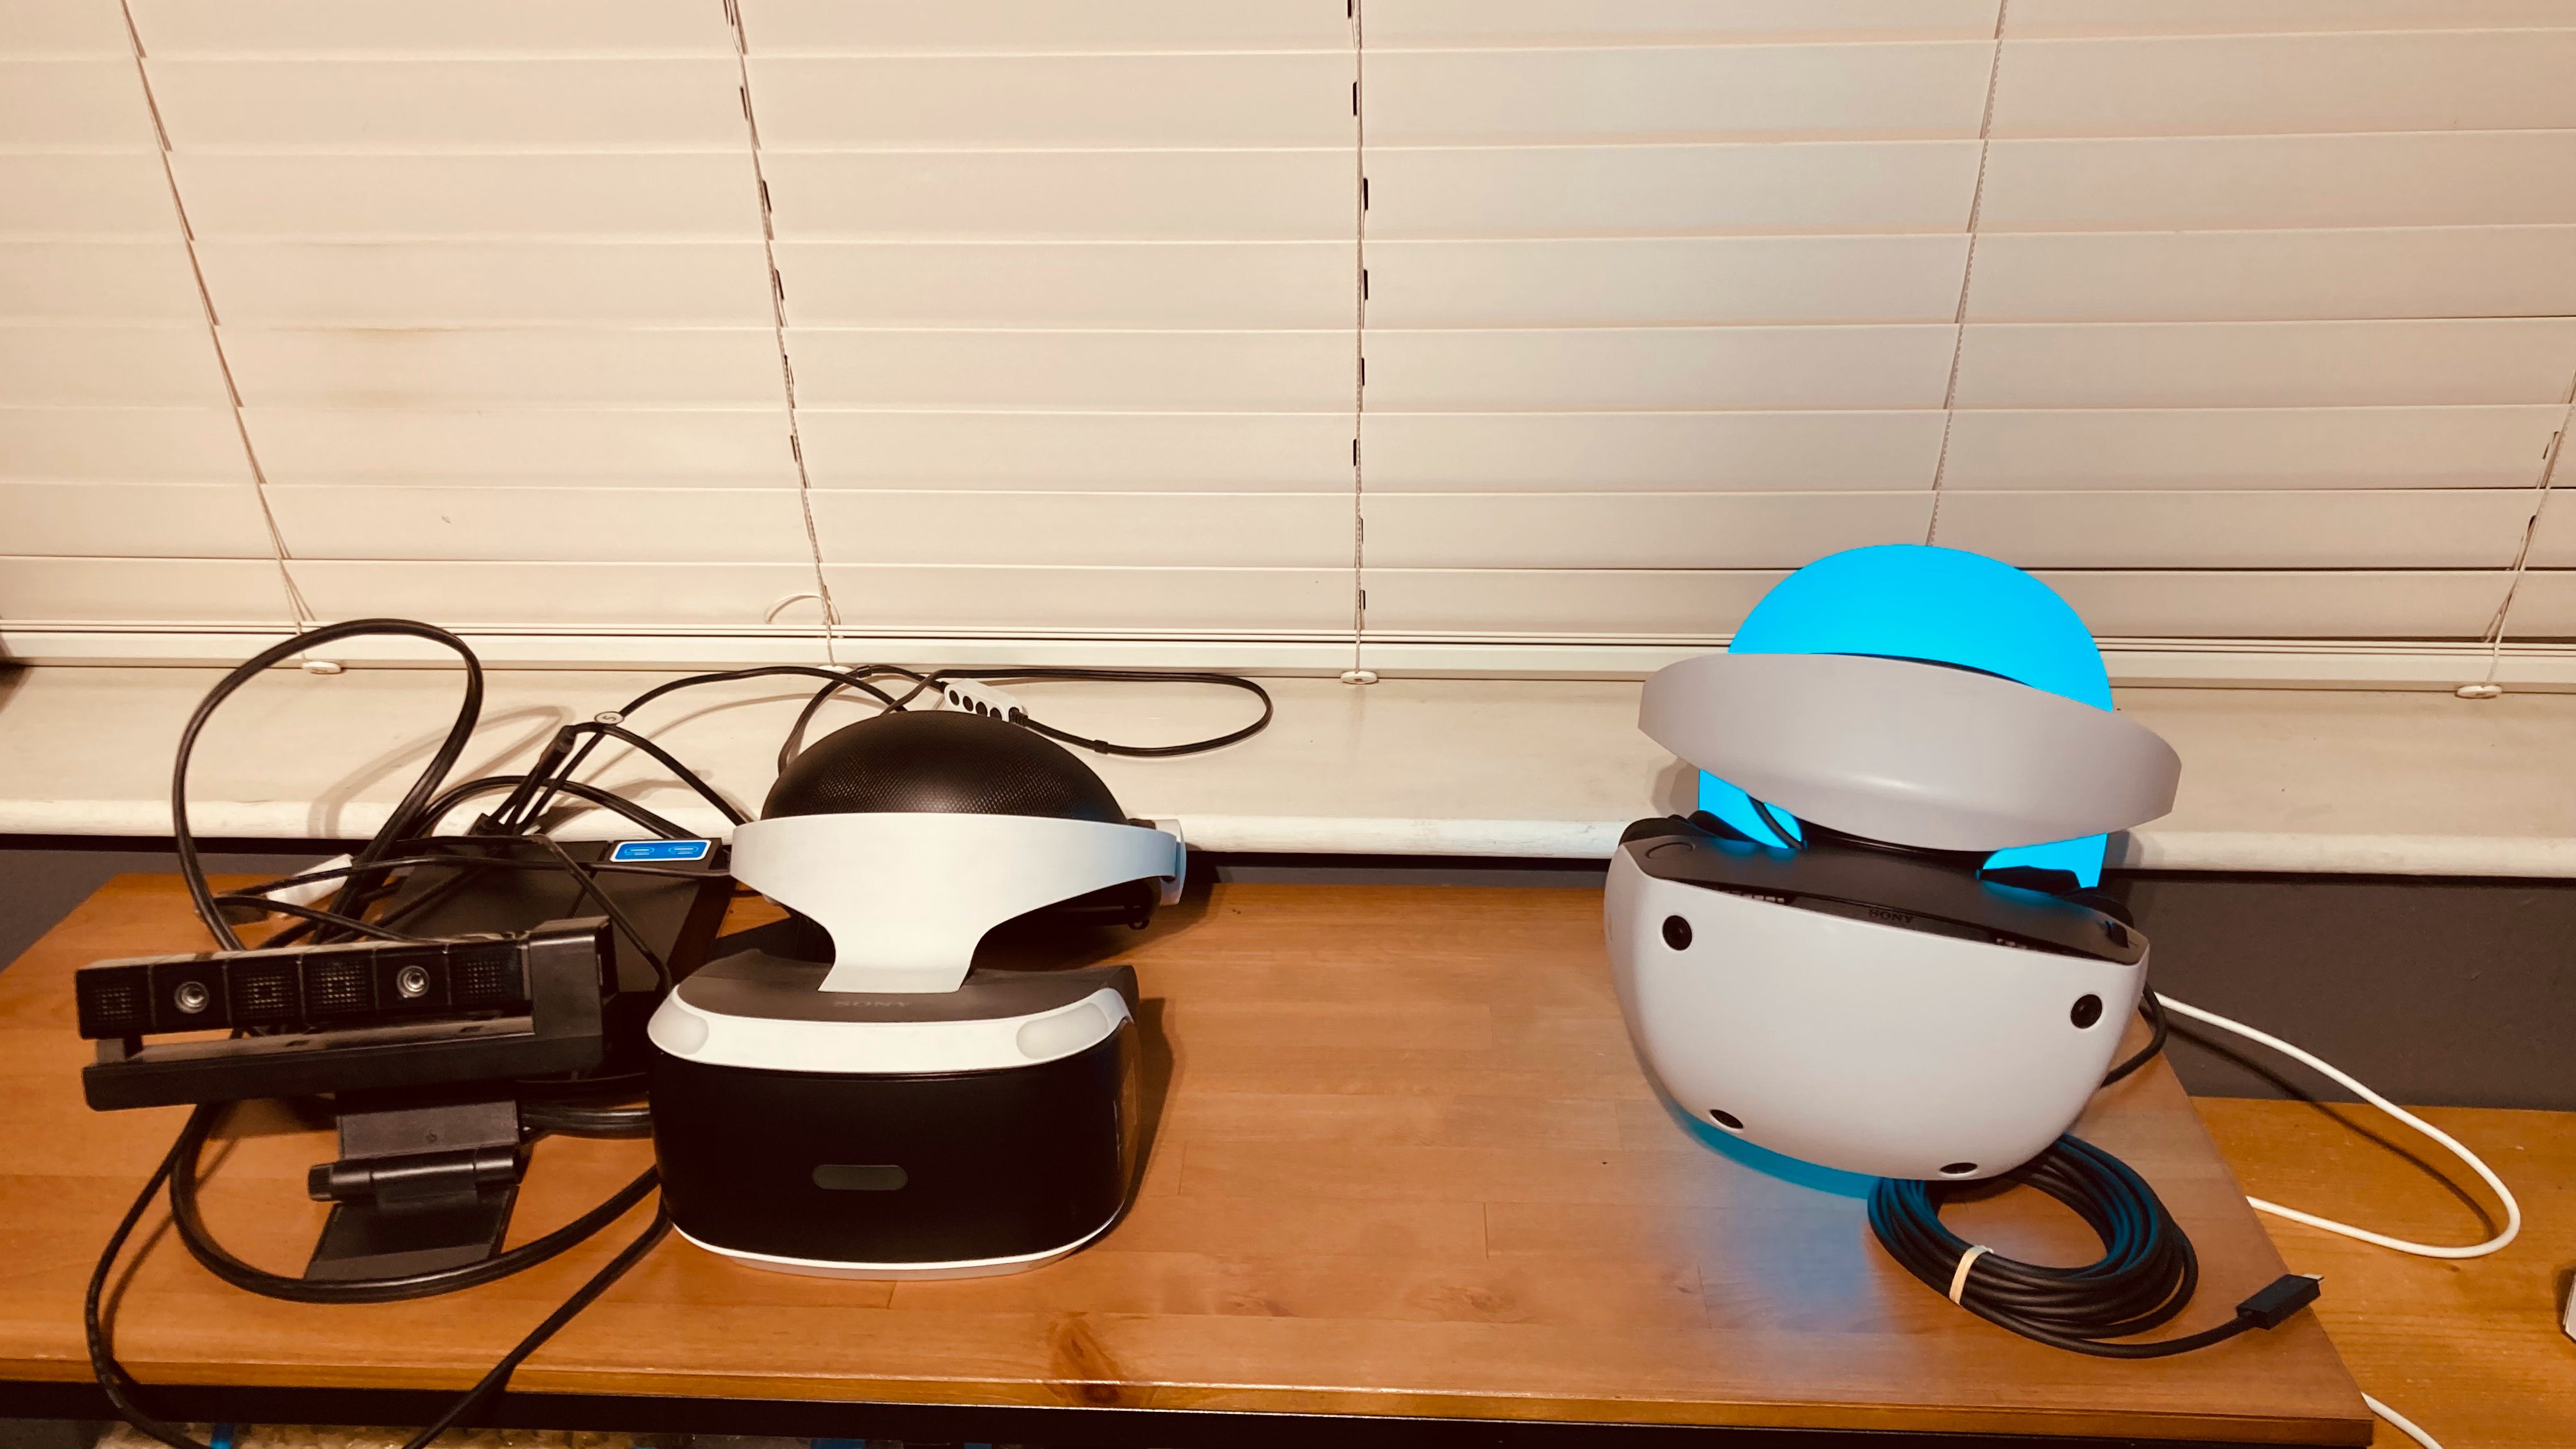 PS VR Integration